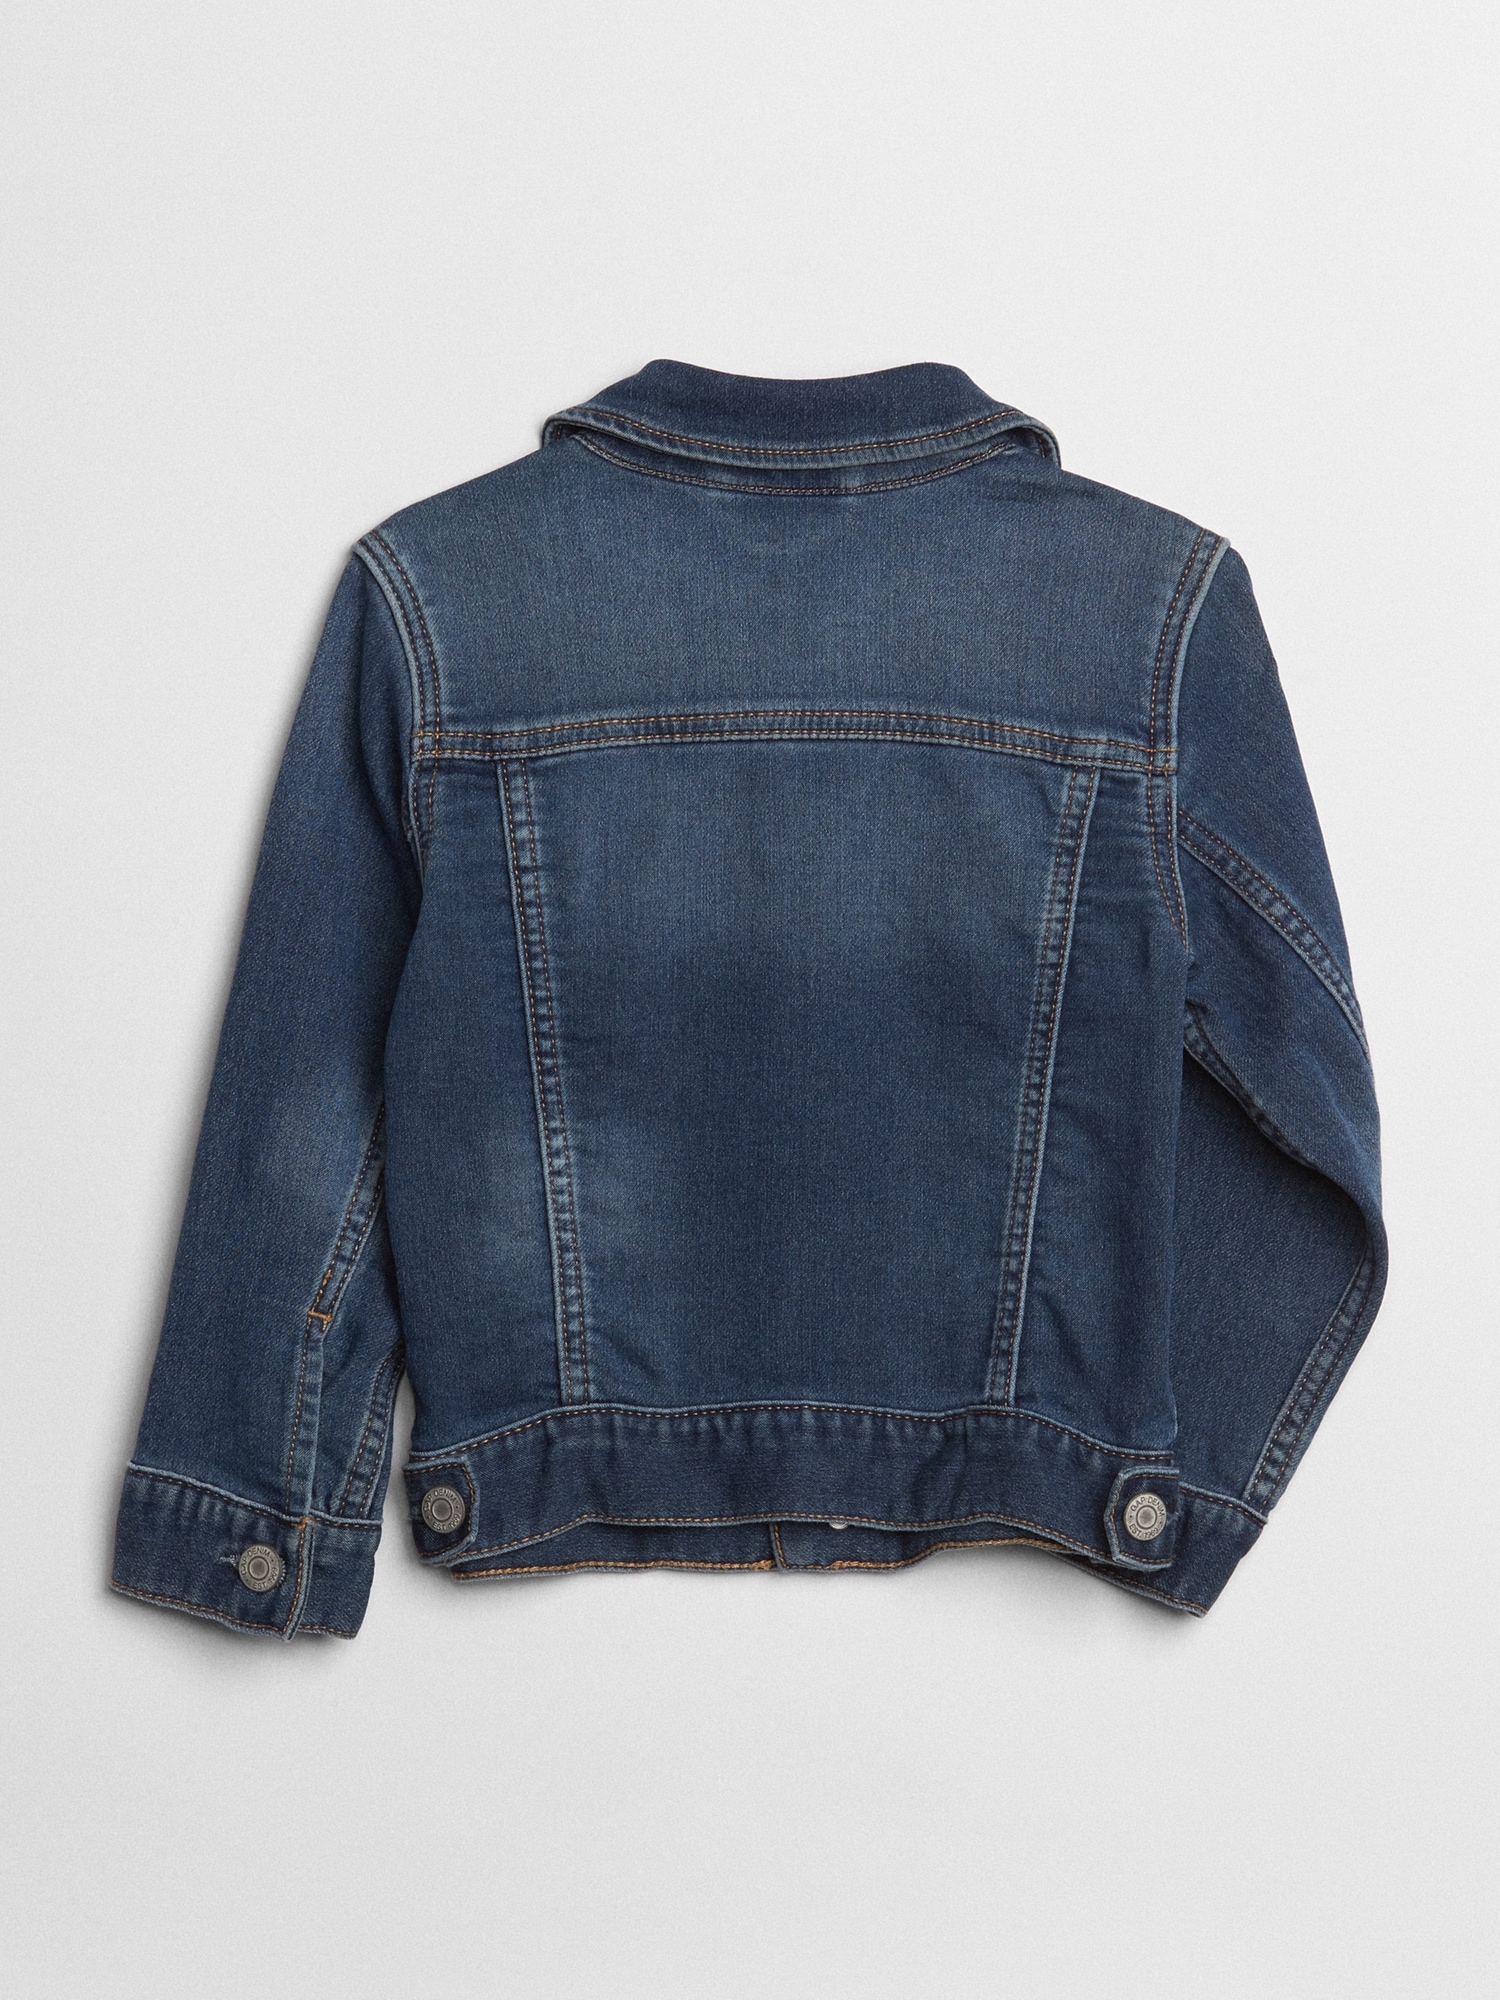 Toddler Icon Denim Jacket with Washwell™ | Gap